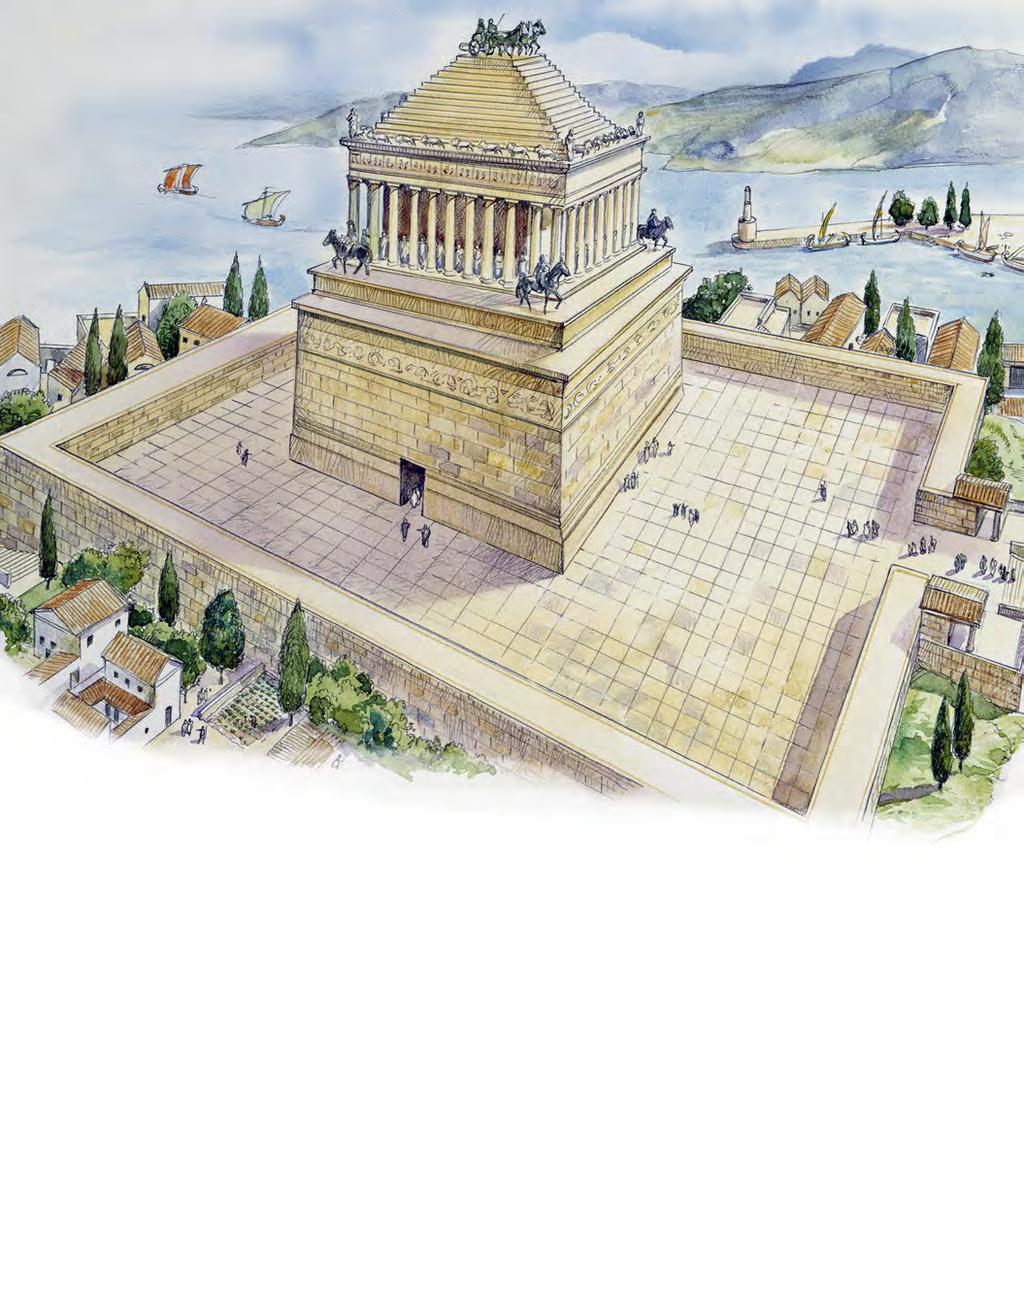 Mausoleum at Halicarnassus (modern-day Turkey) Mausoleum at